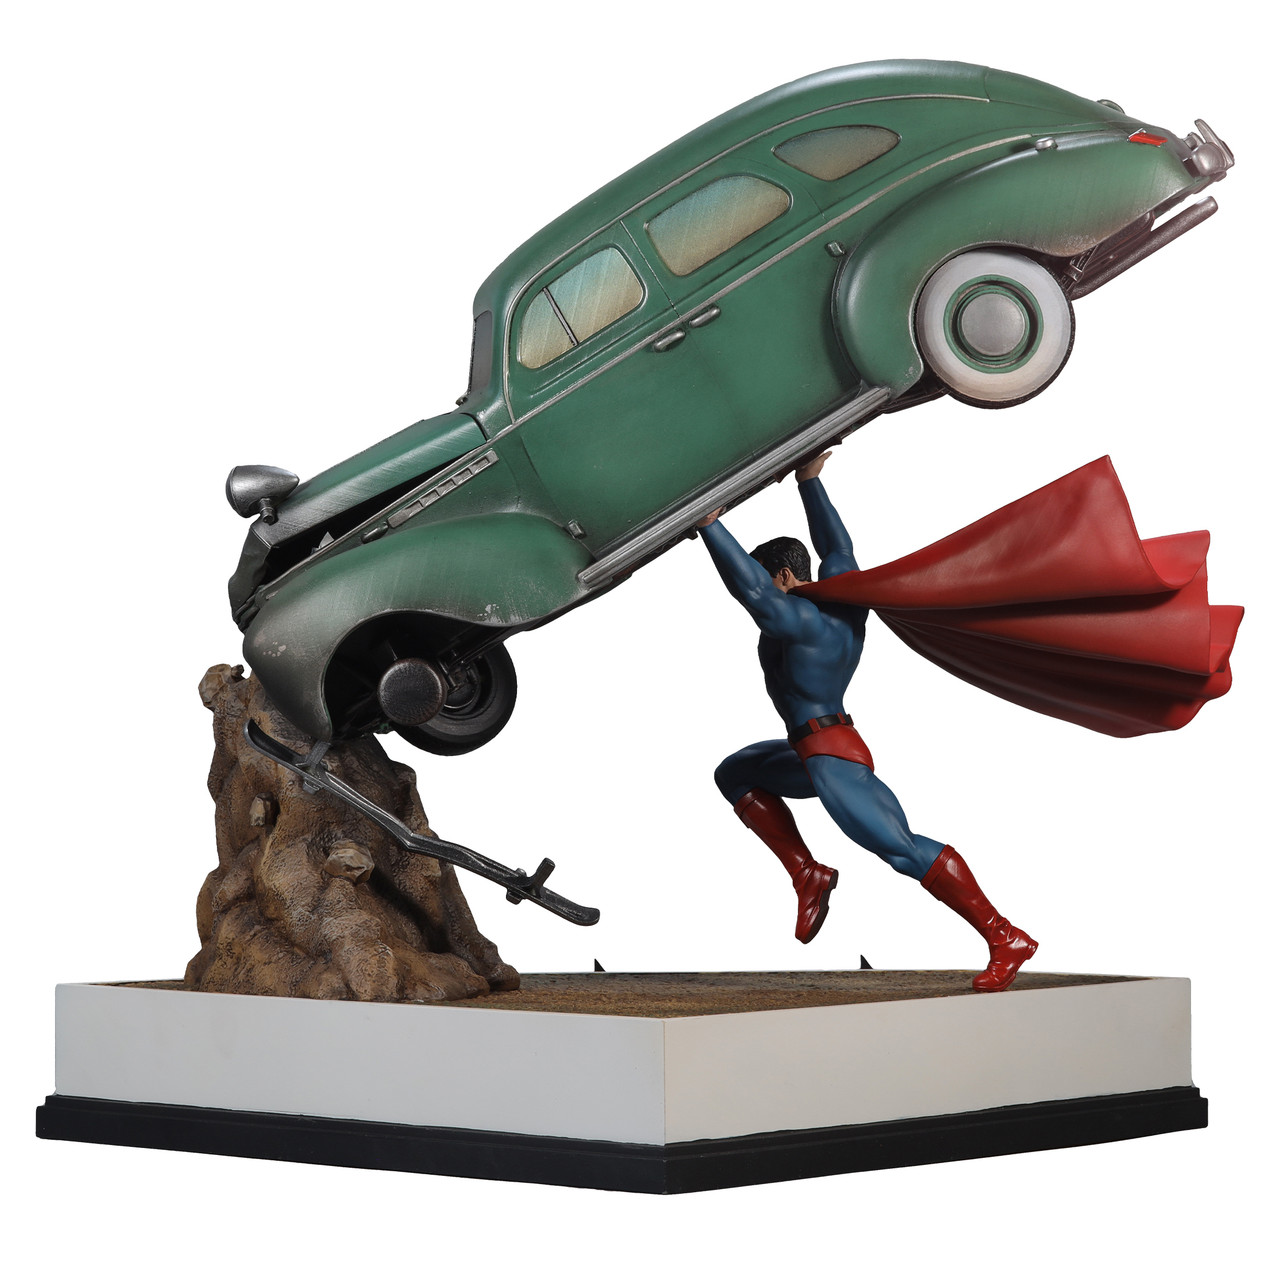 Statue Superman - figurine Special Edition Mega 6 DC Comics Super